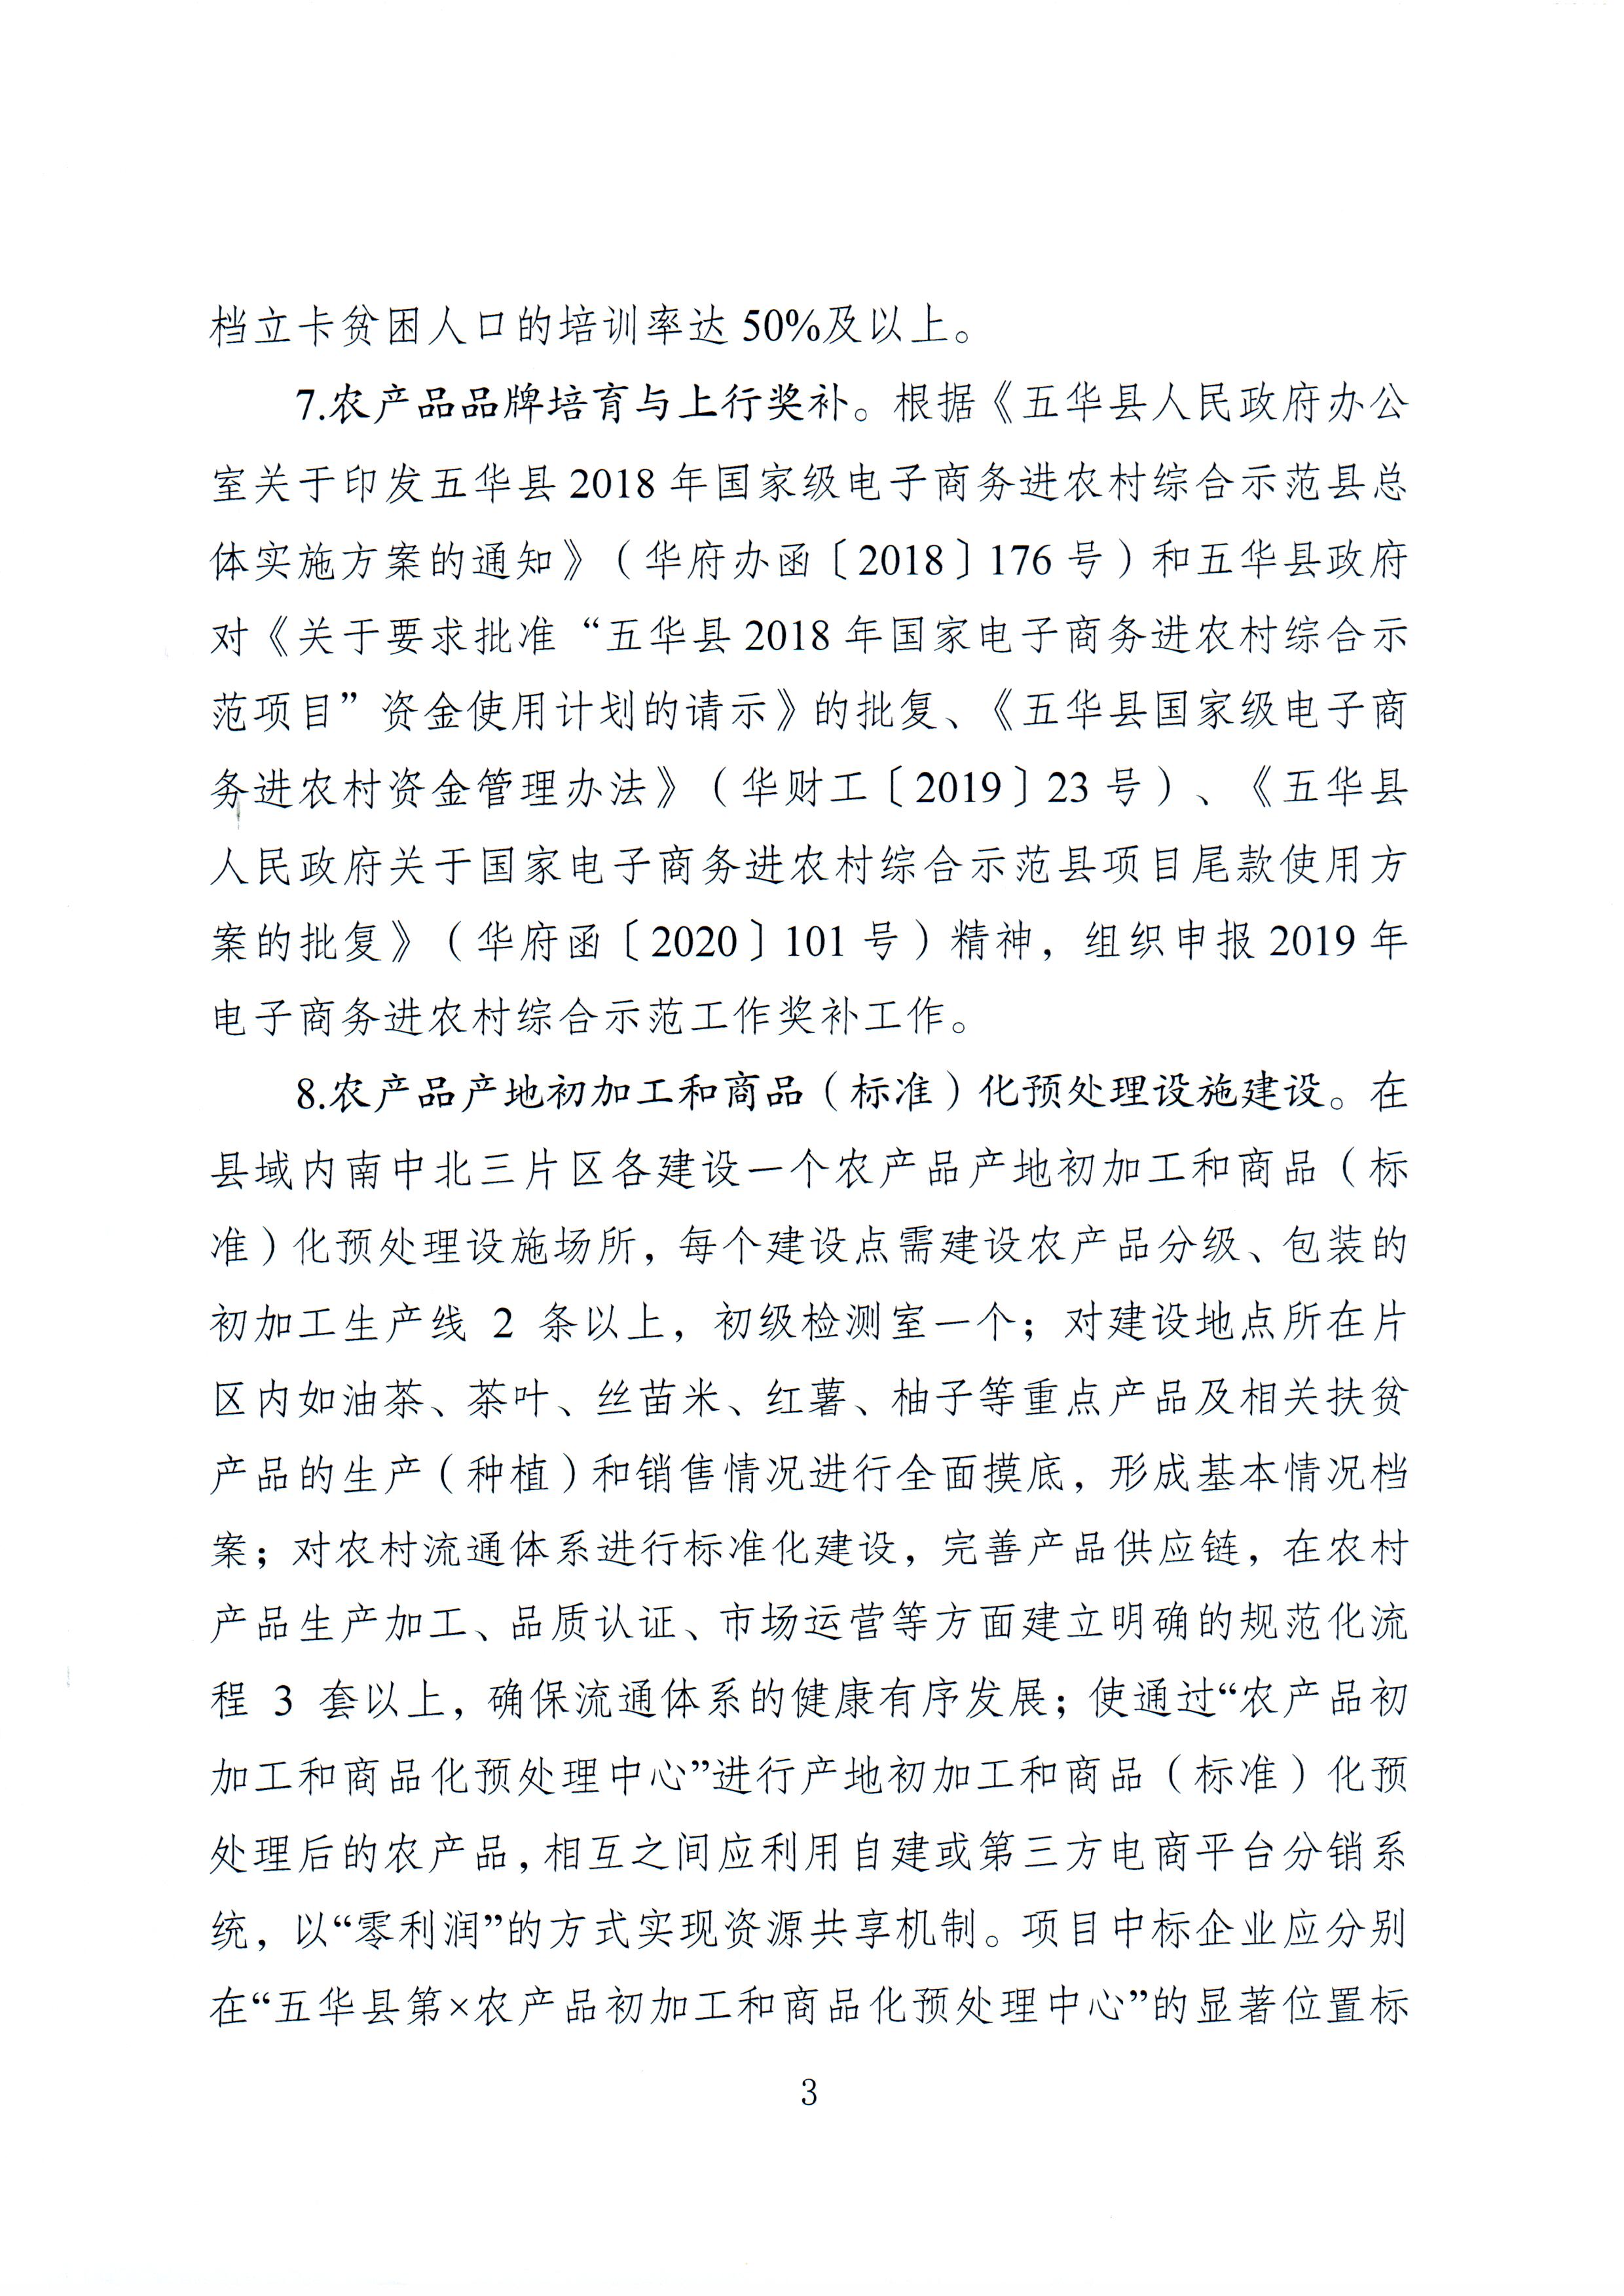 1、五华县电子商务进农村综合示范项目2021年1月工作推进情况（领导小组办公室）--（2021年2月3日确定版） (3).jpg